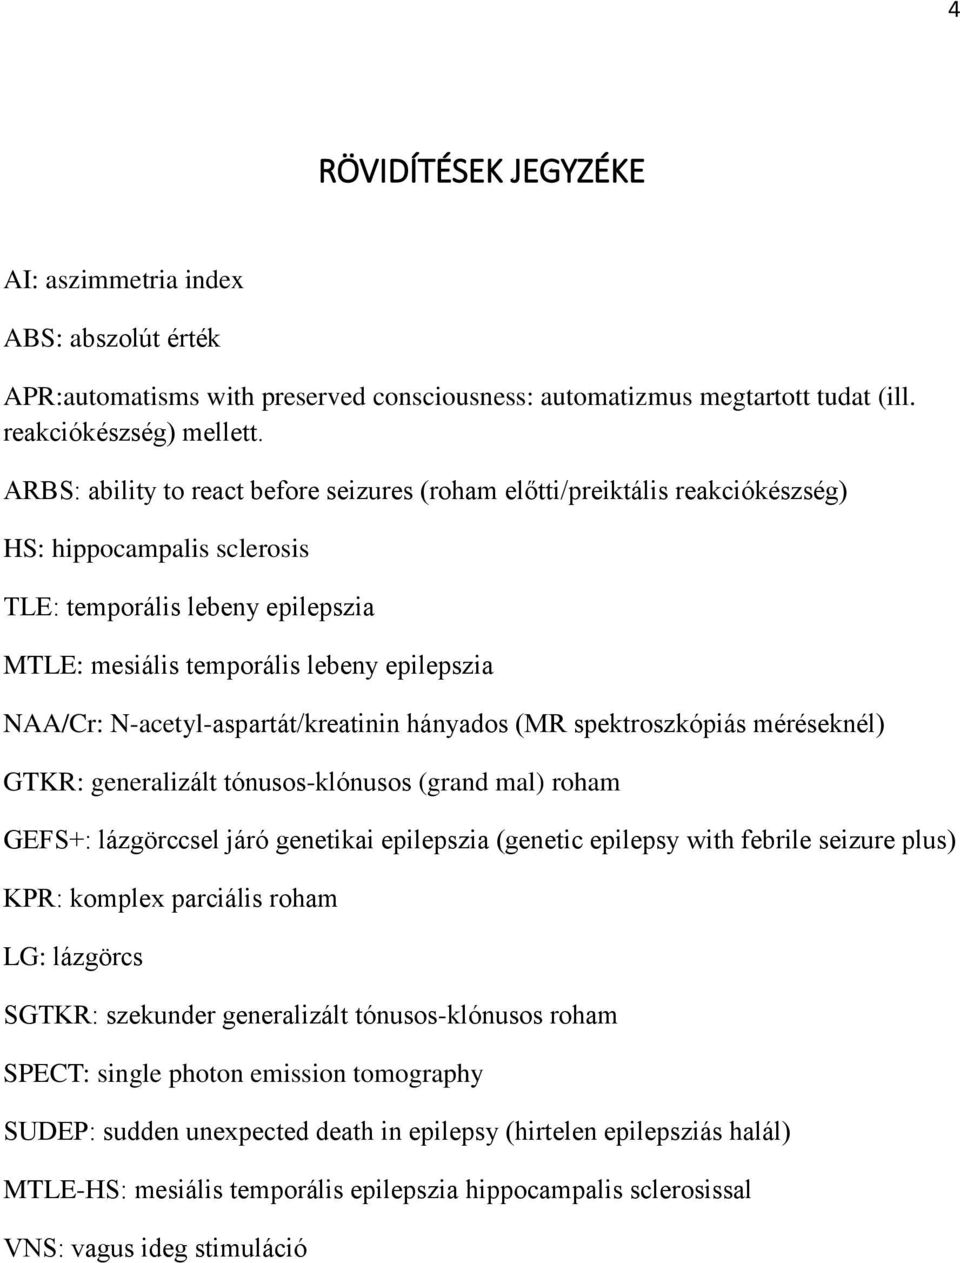 N-acetyl-aspartát/kreatinin hányados (MR spektroszkópiás méréseknél) GTKR: generalizált tónusos-klónusos (grand mal) roham GEFS+: lázgörccsel járó genetikai epilepszia (genetic epilepsy with febrile